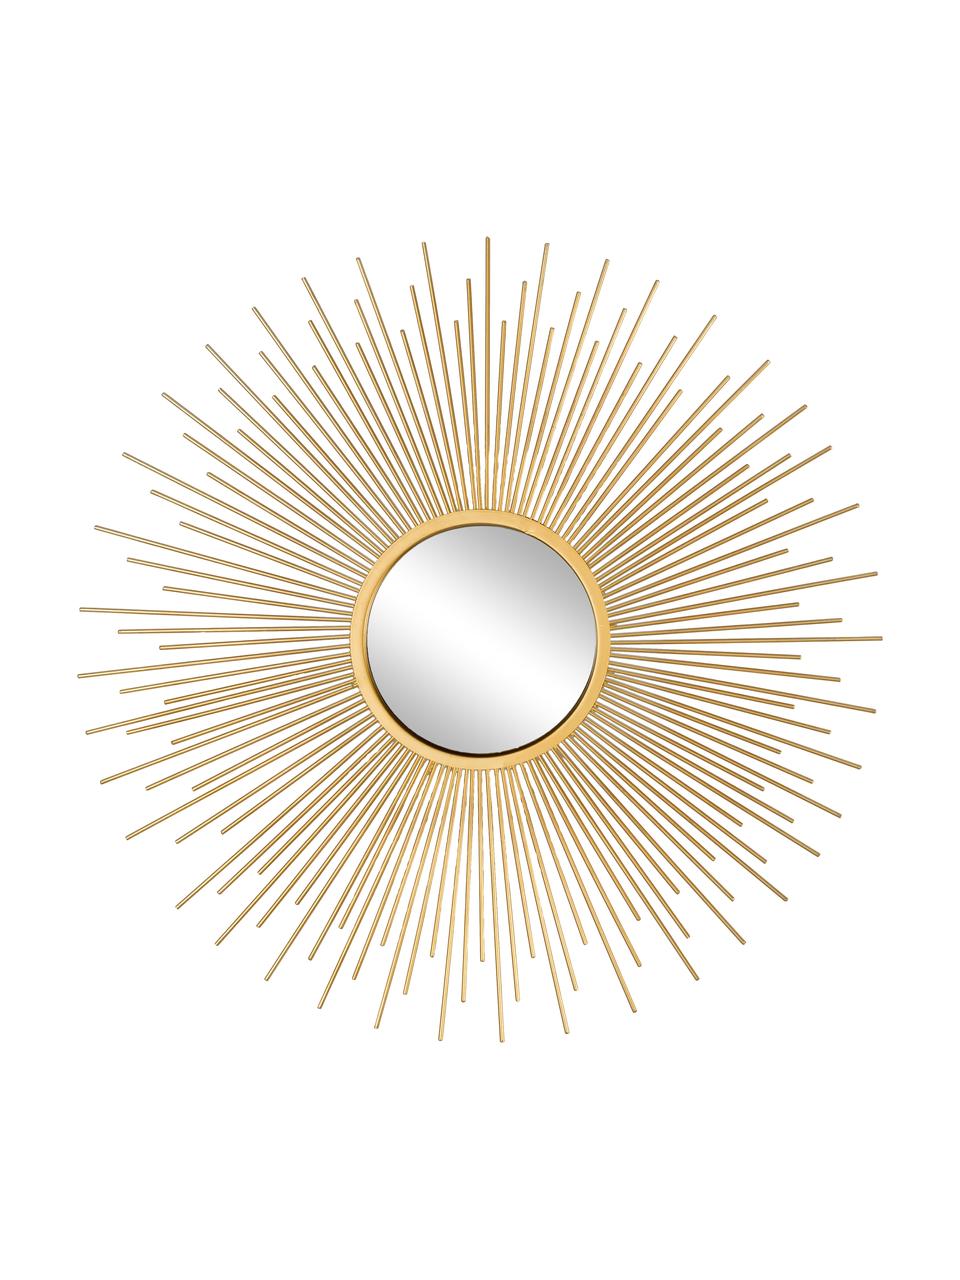 Dekospiegel-Set Sun mit goldenen Metallrahmen, 3-tlg, Rahmen: Metall, beschichtet, Spiegelfläche: Spiegelglas, Goldfarben, Set mit verschiedenen Größen